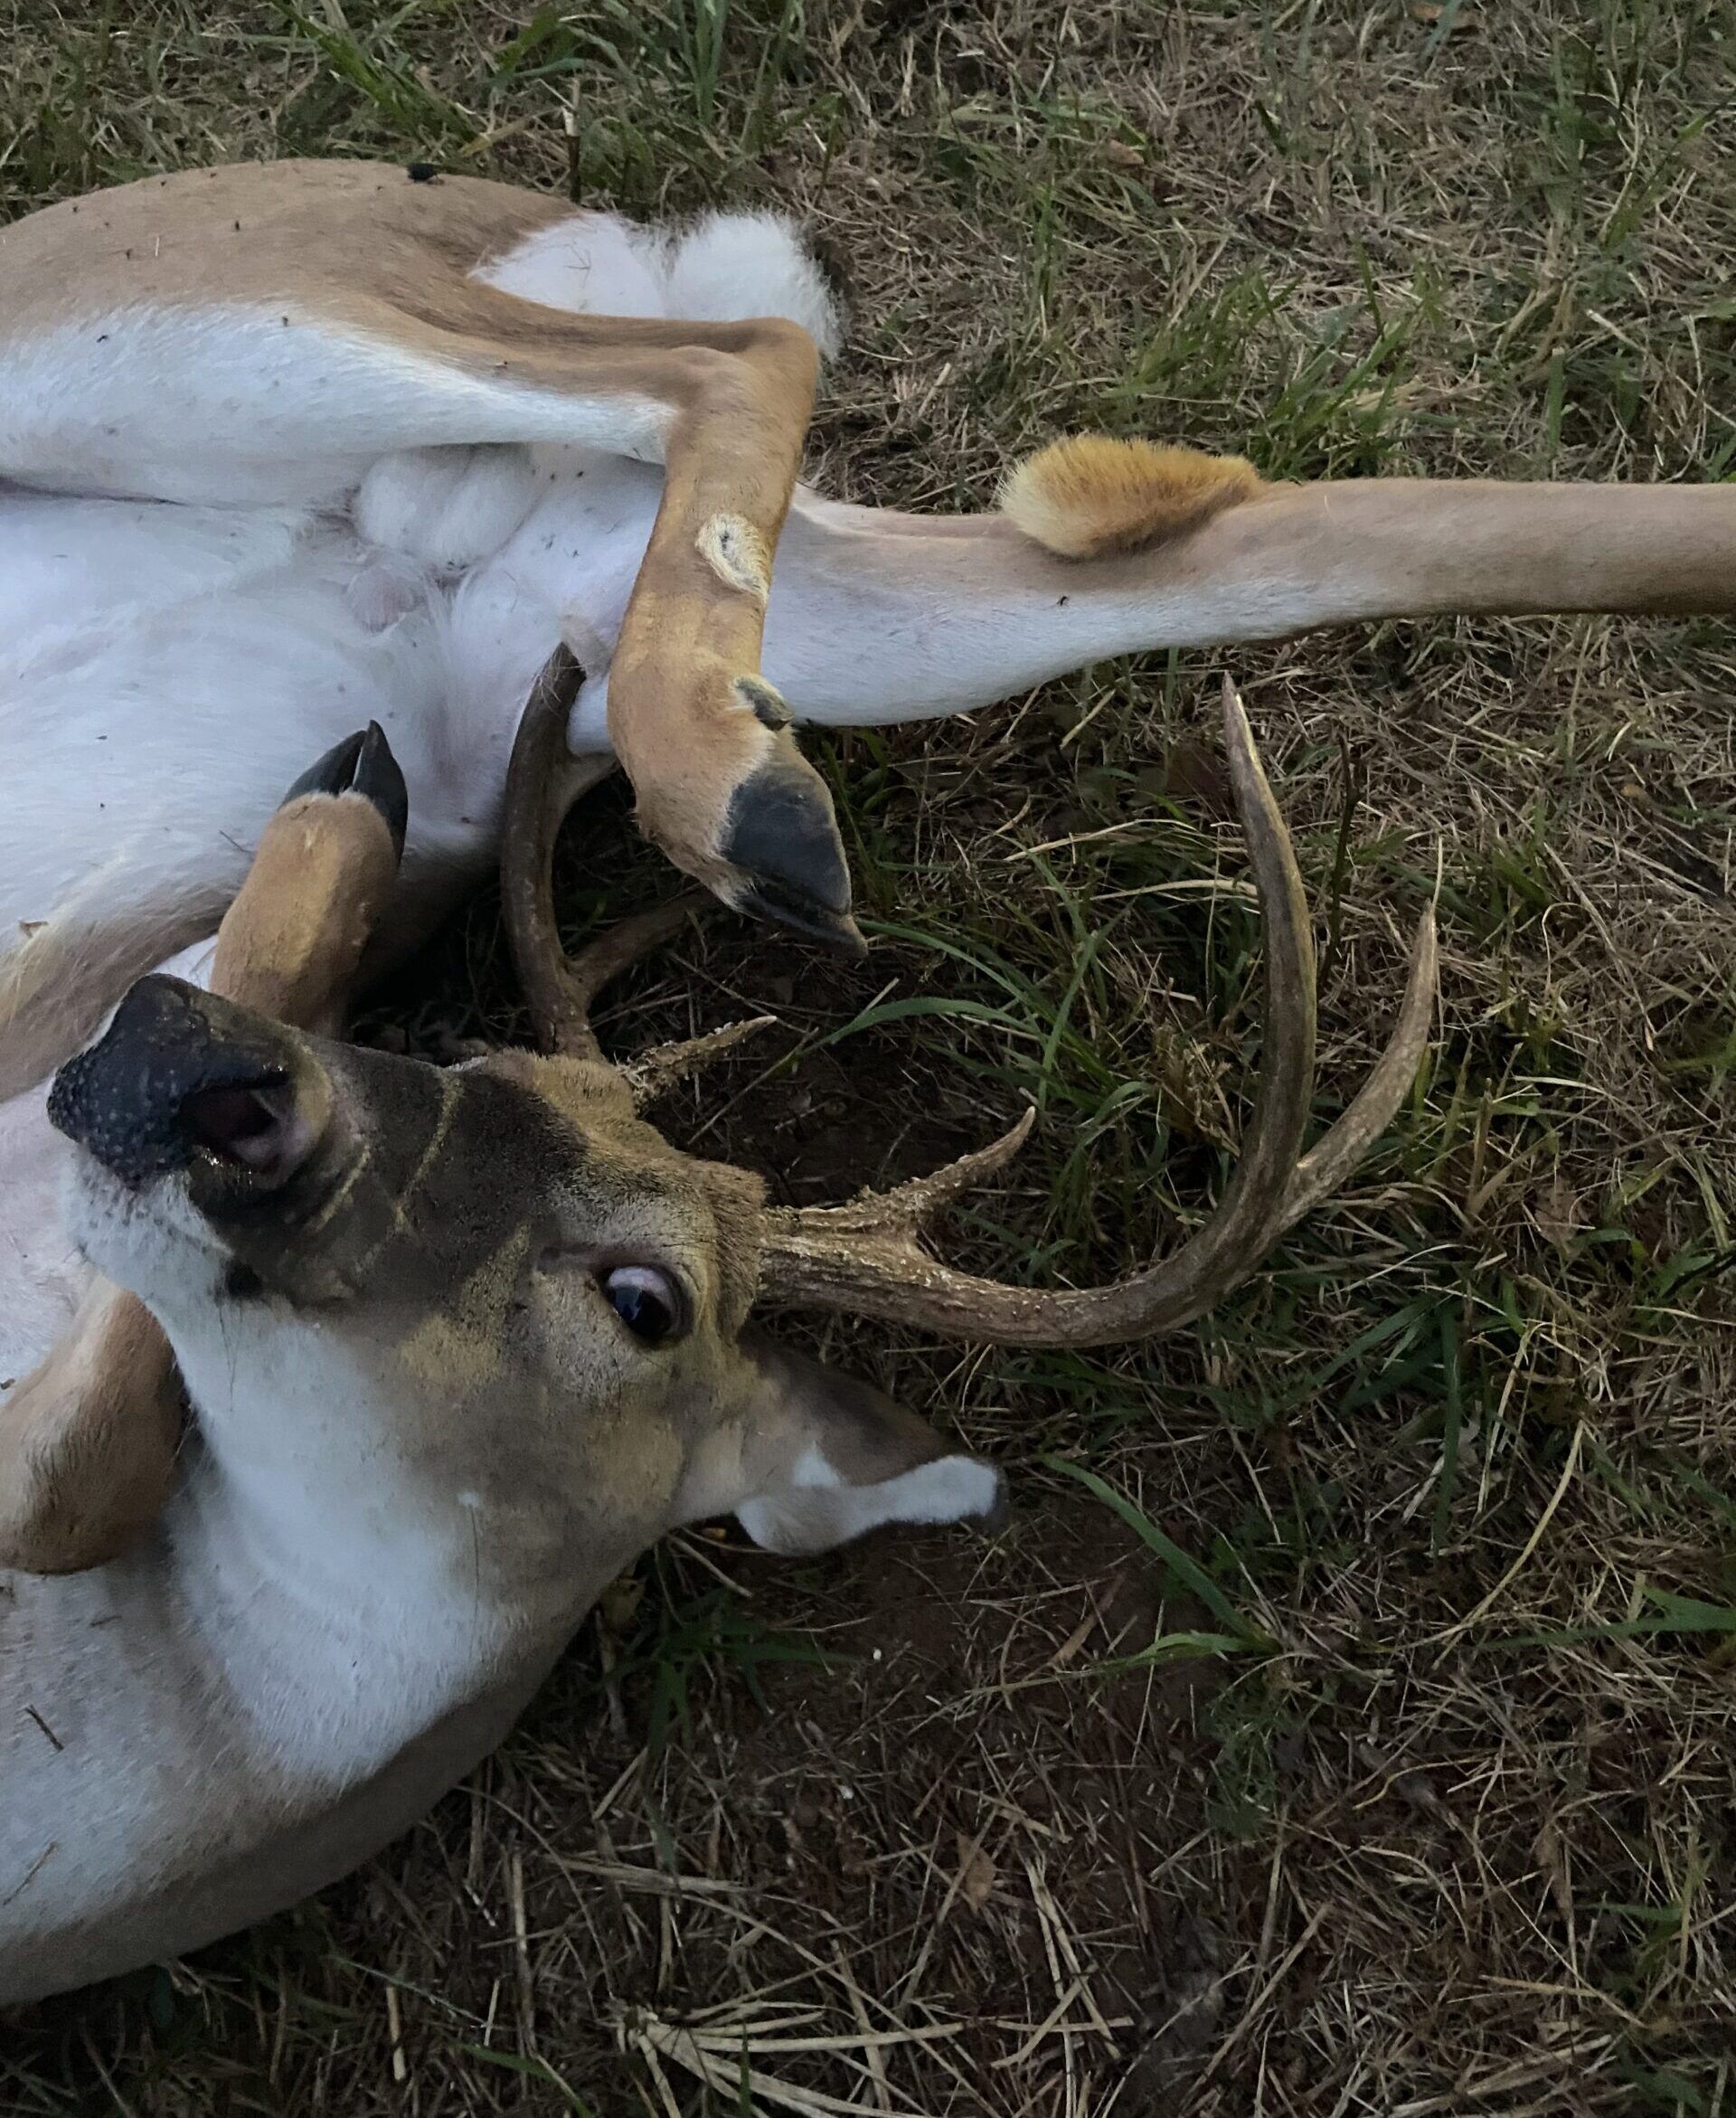 After a deer got tangled in its own legs, an Arkansas hunter saved the buck.